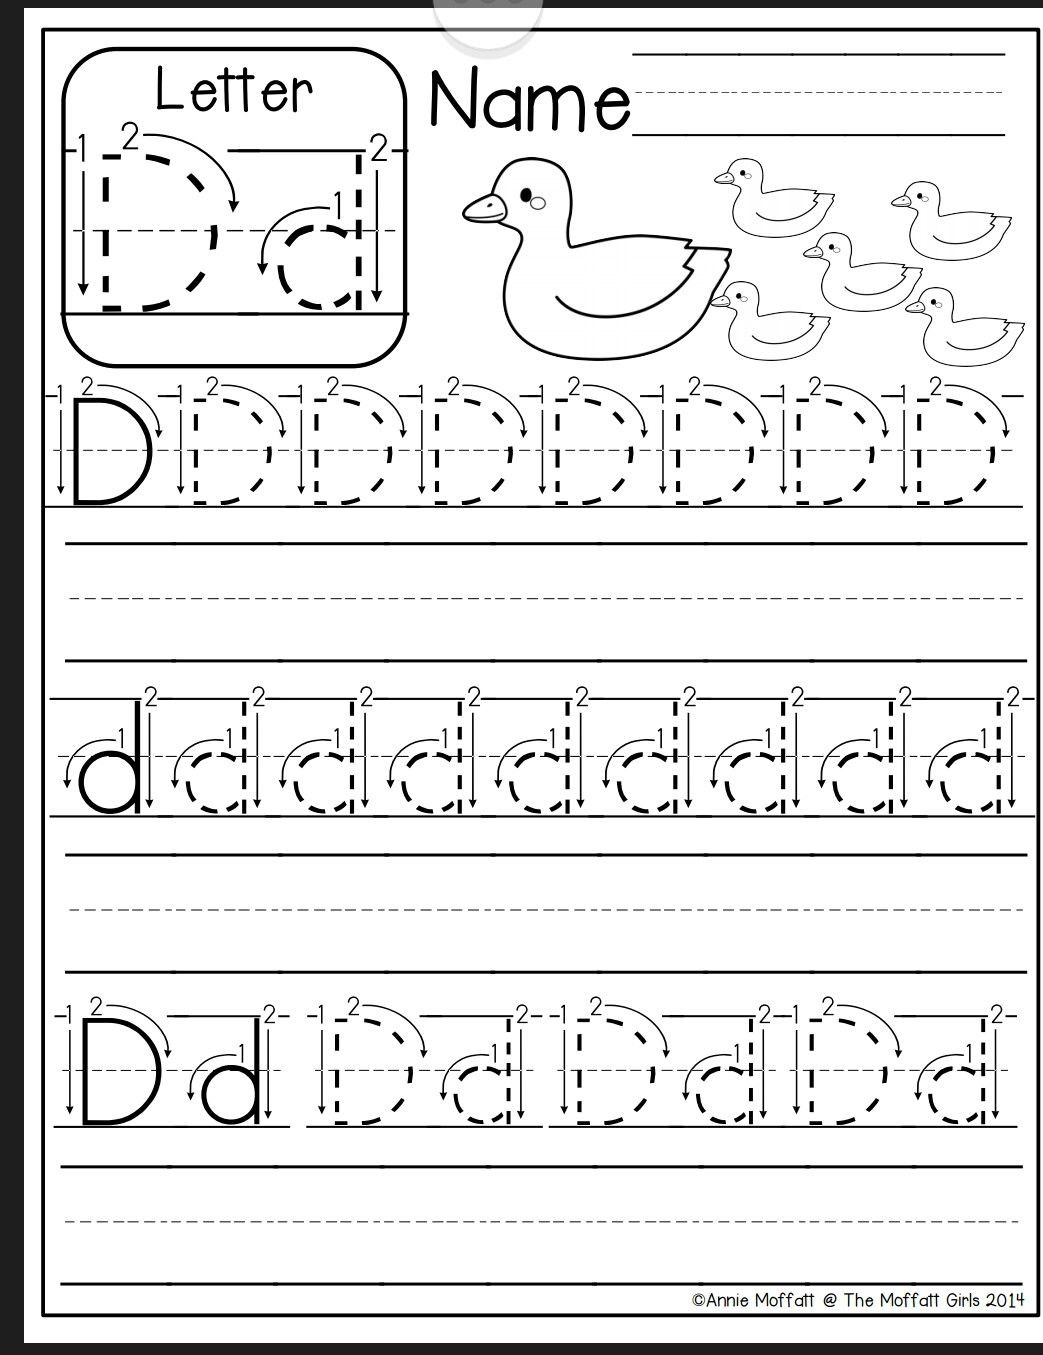 Letter D Worksheet for Preschool Letter D Worksheer